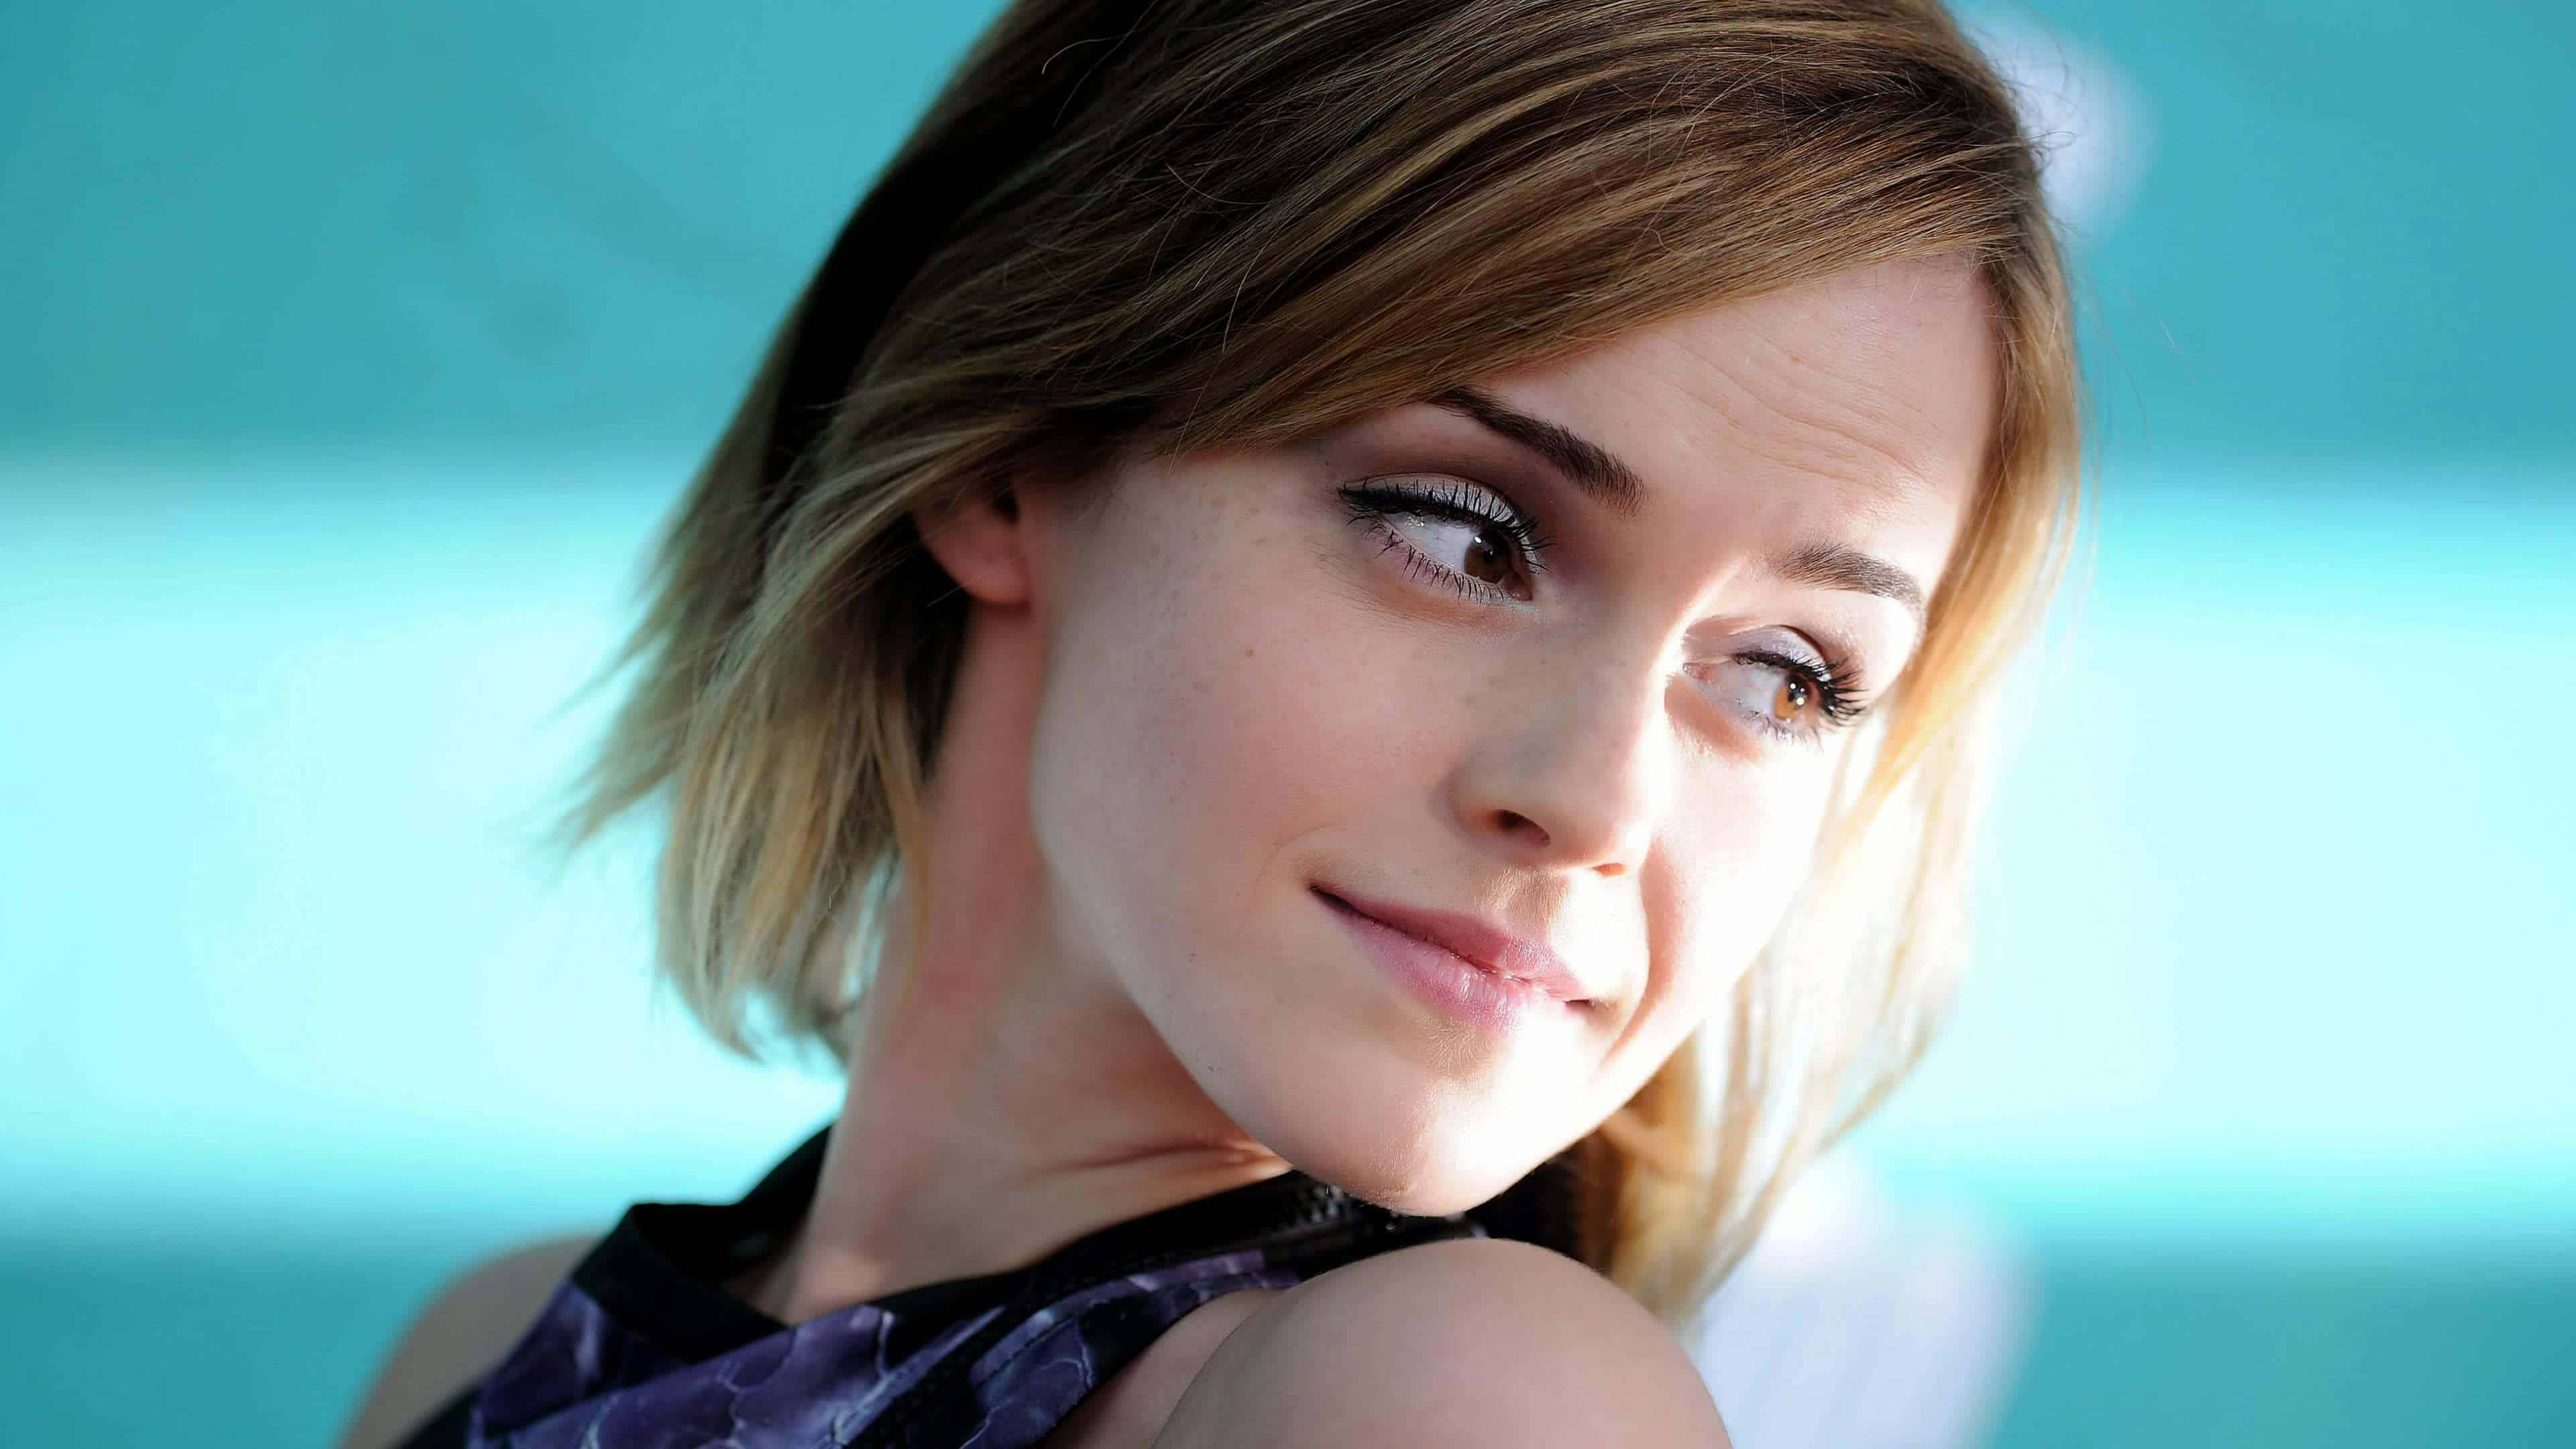 Emma Watson Short Hair UHD 4K Wallpaper